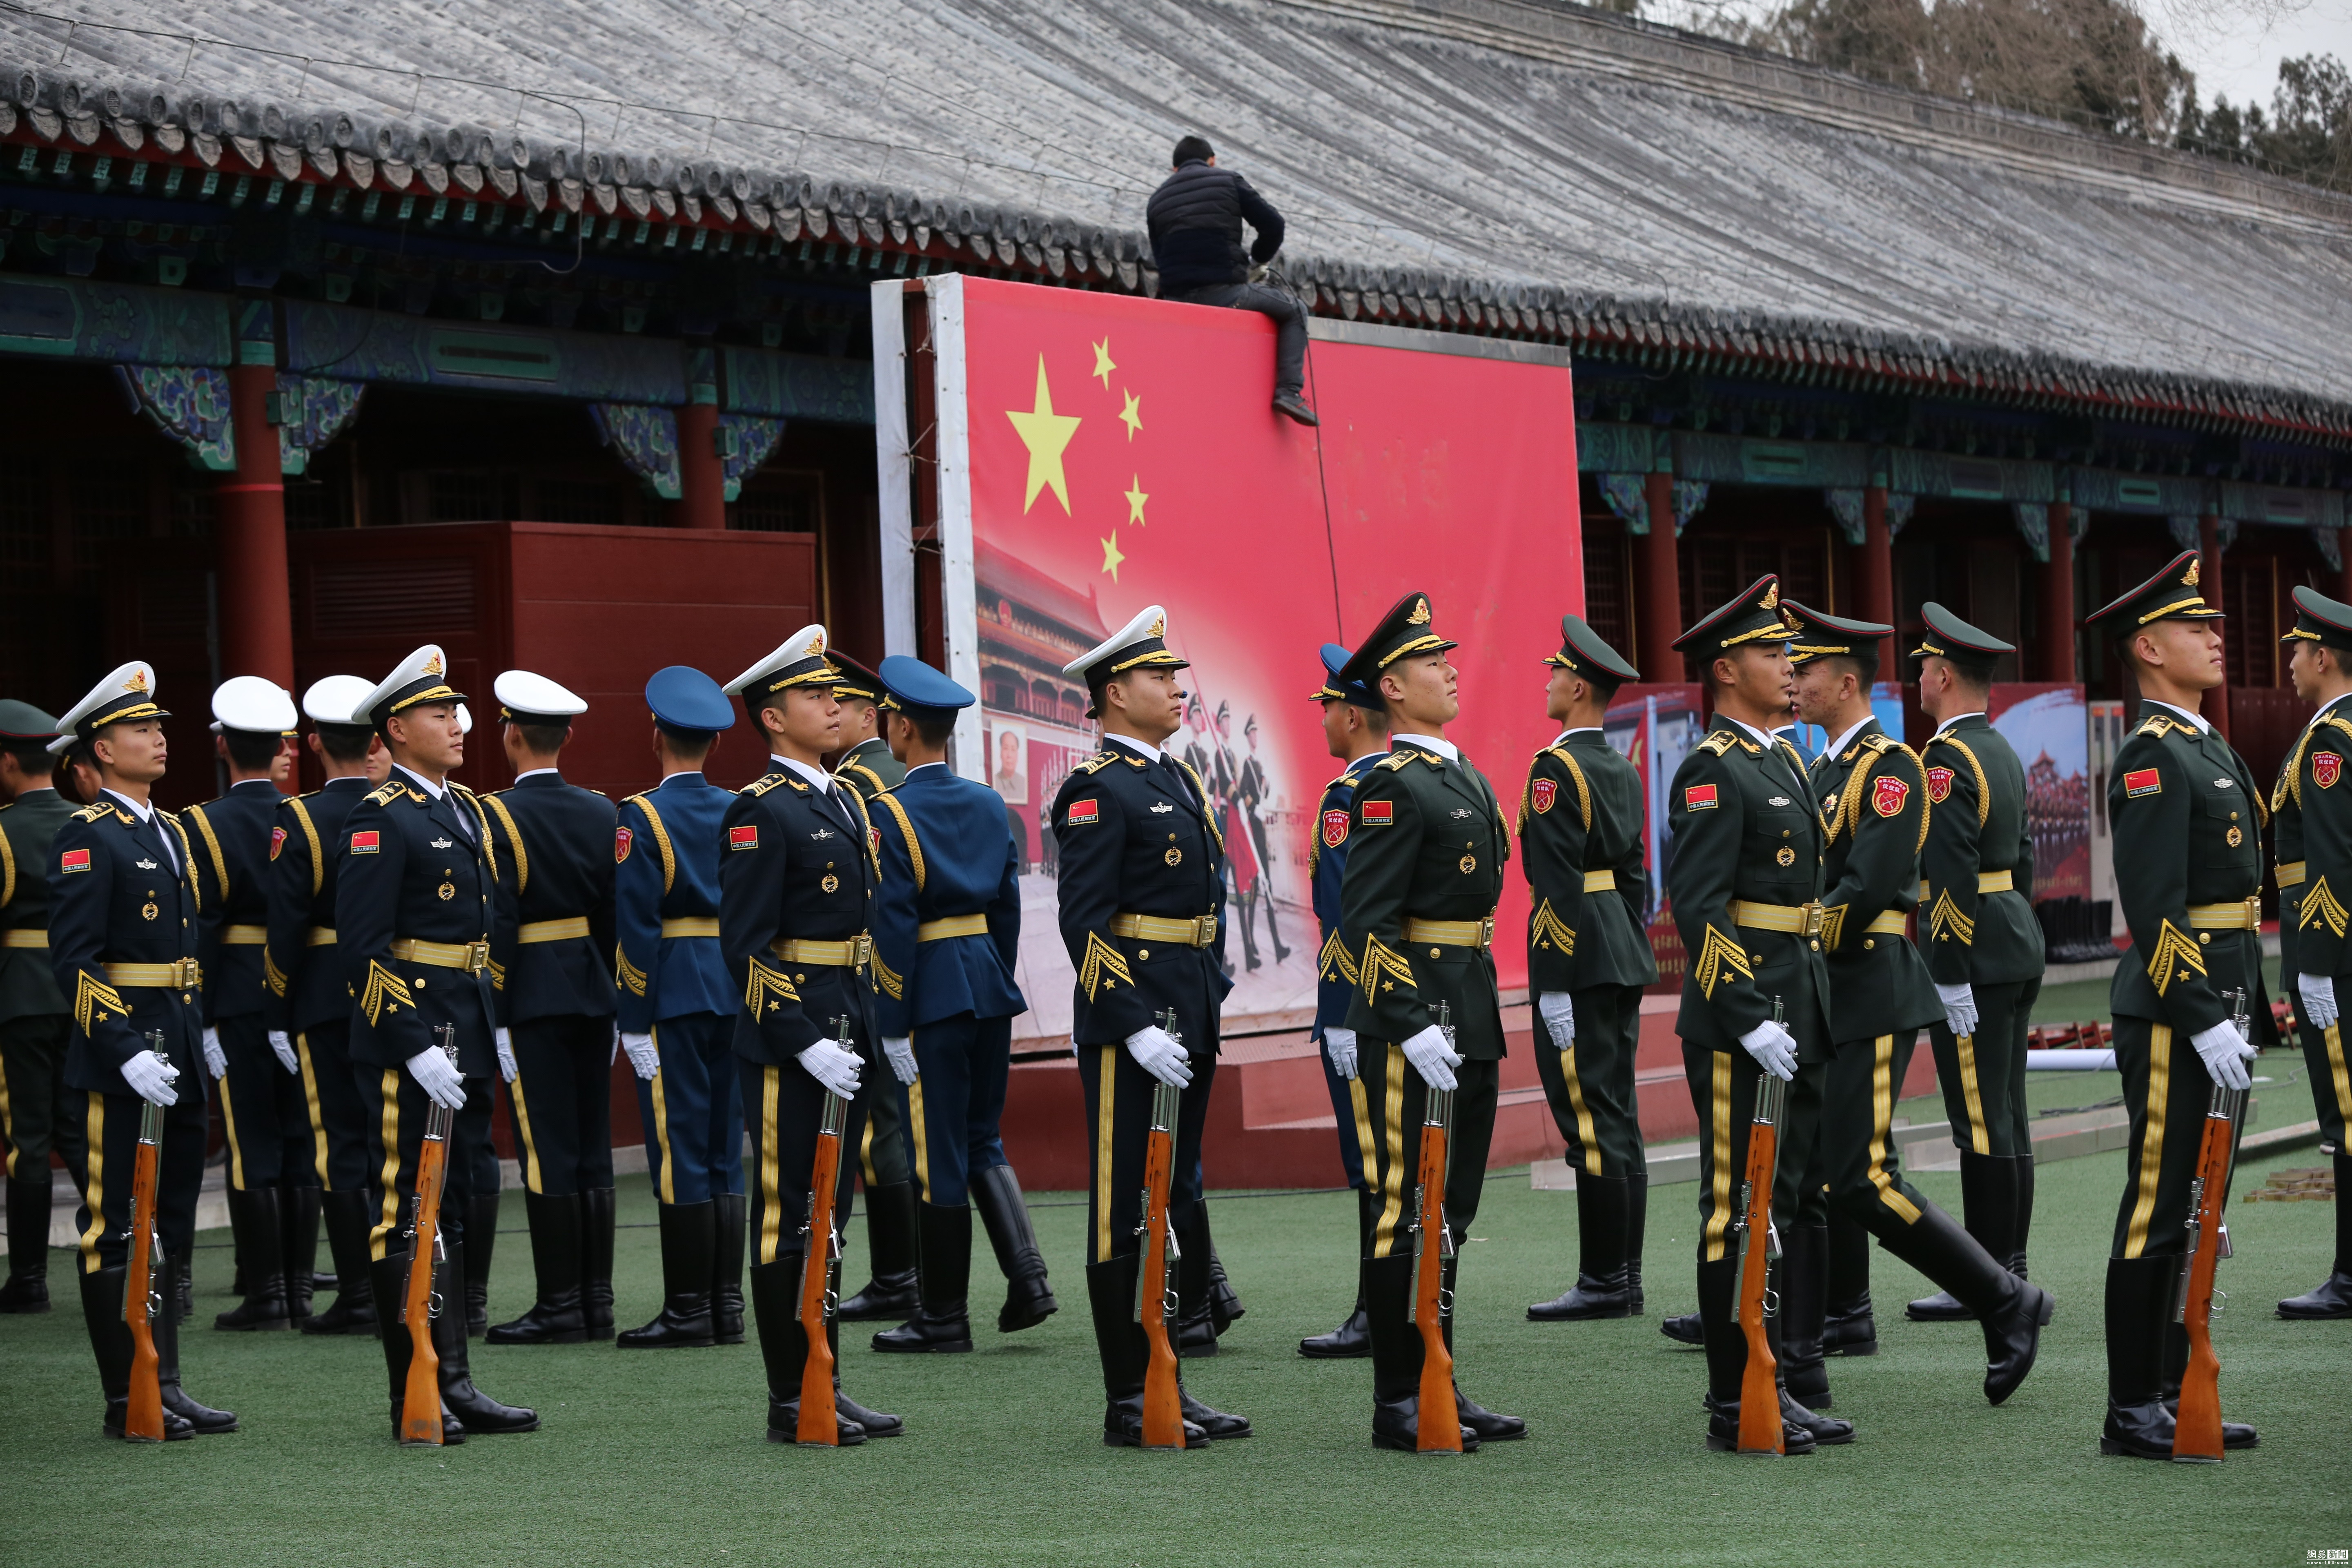 国旗护卫队驻地更背景墙 换三军仪仗队照片 - 中国网